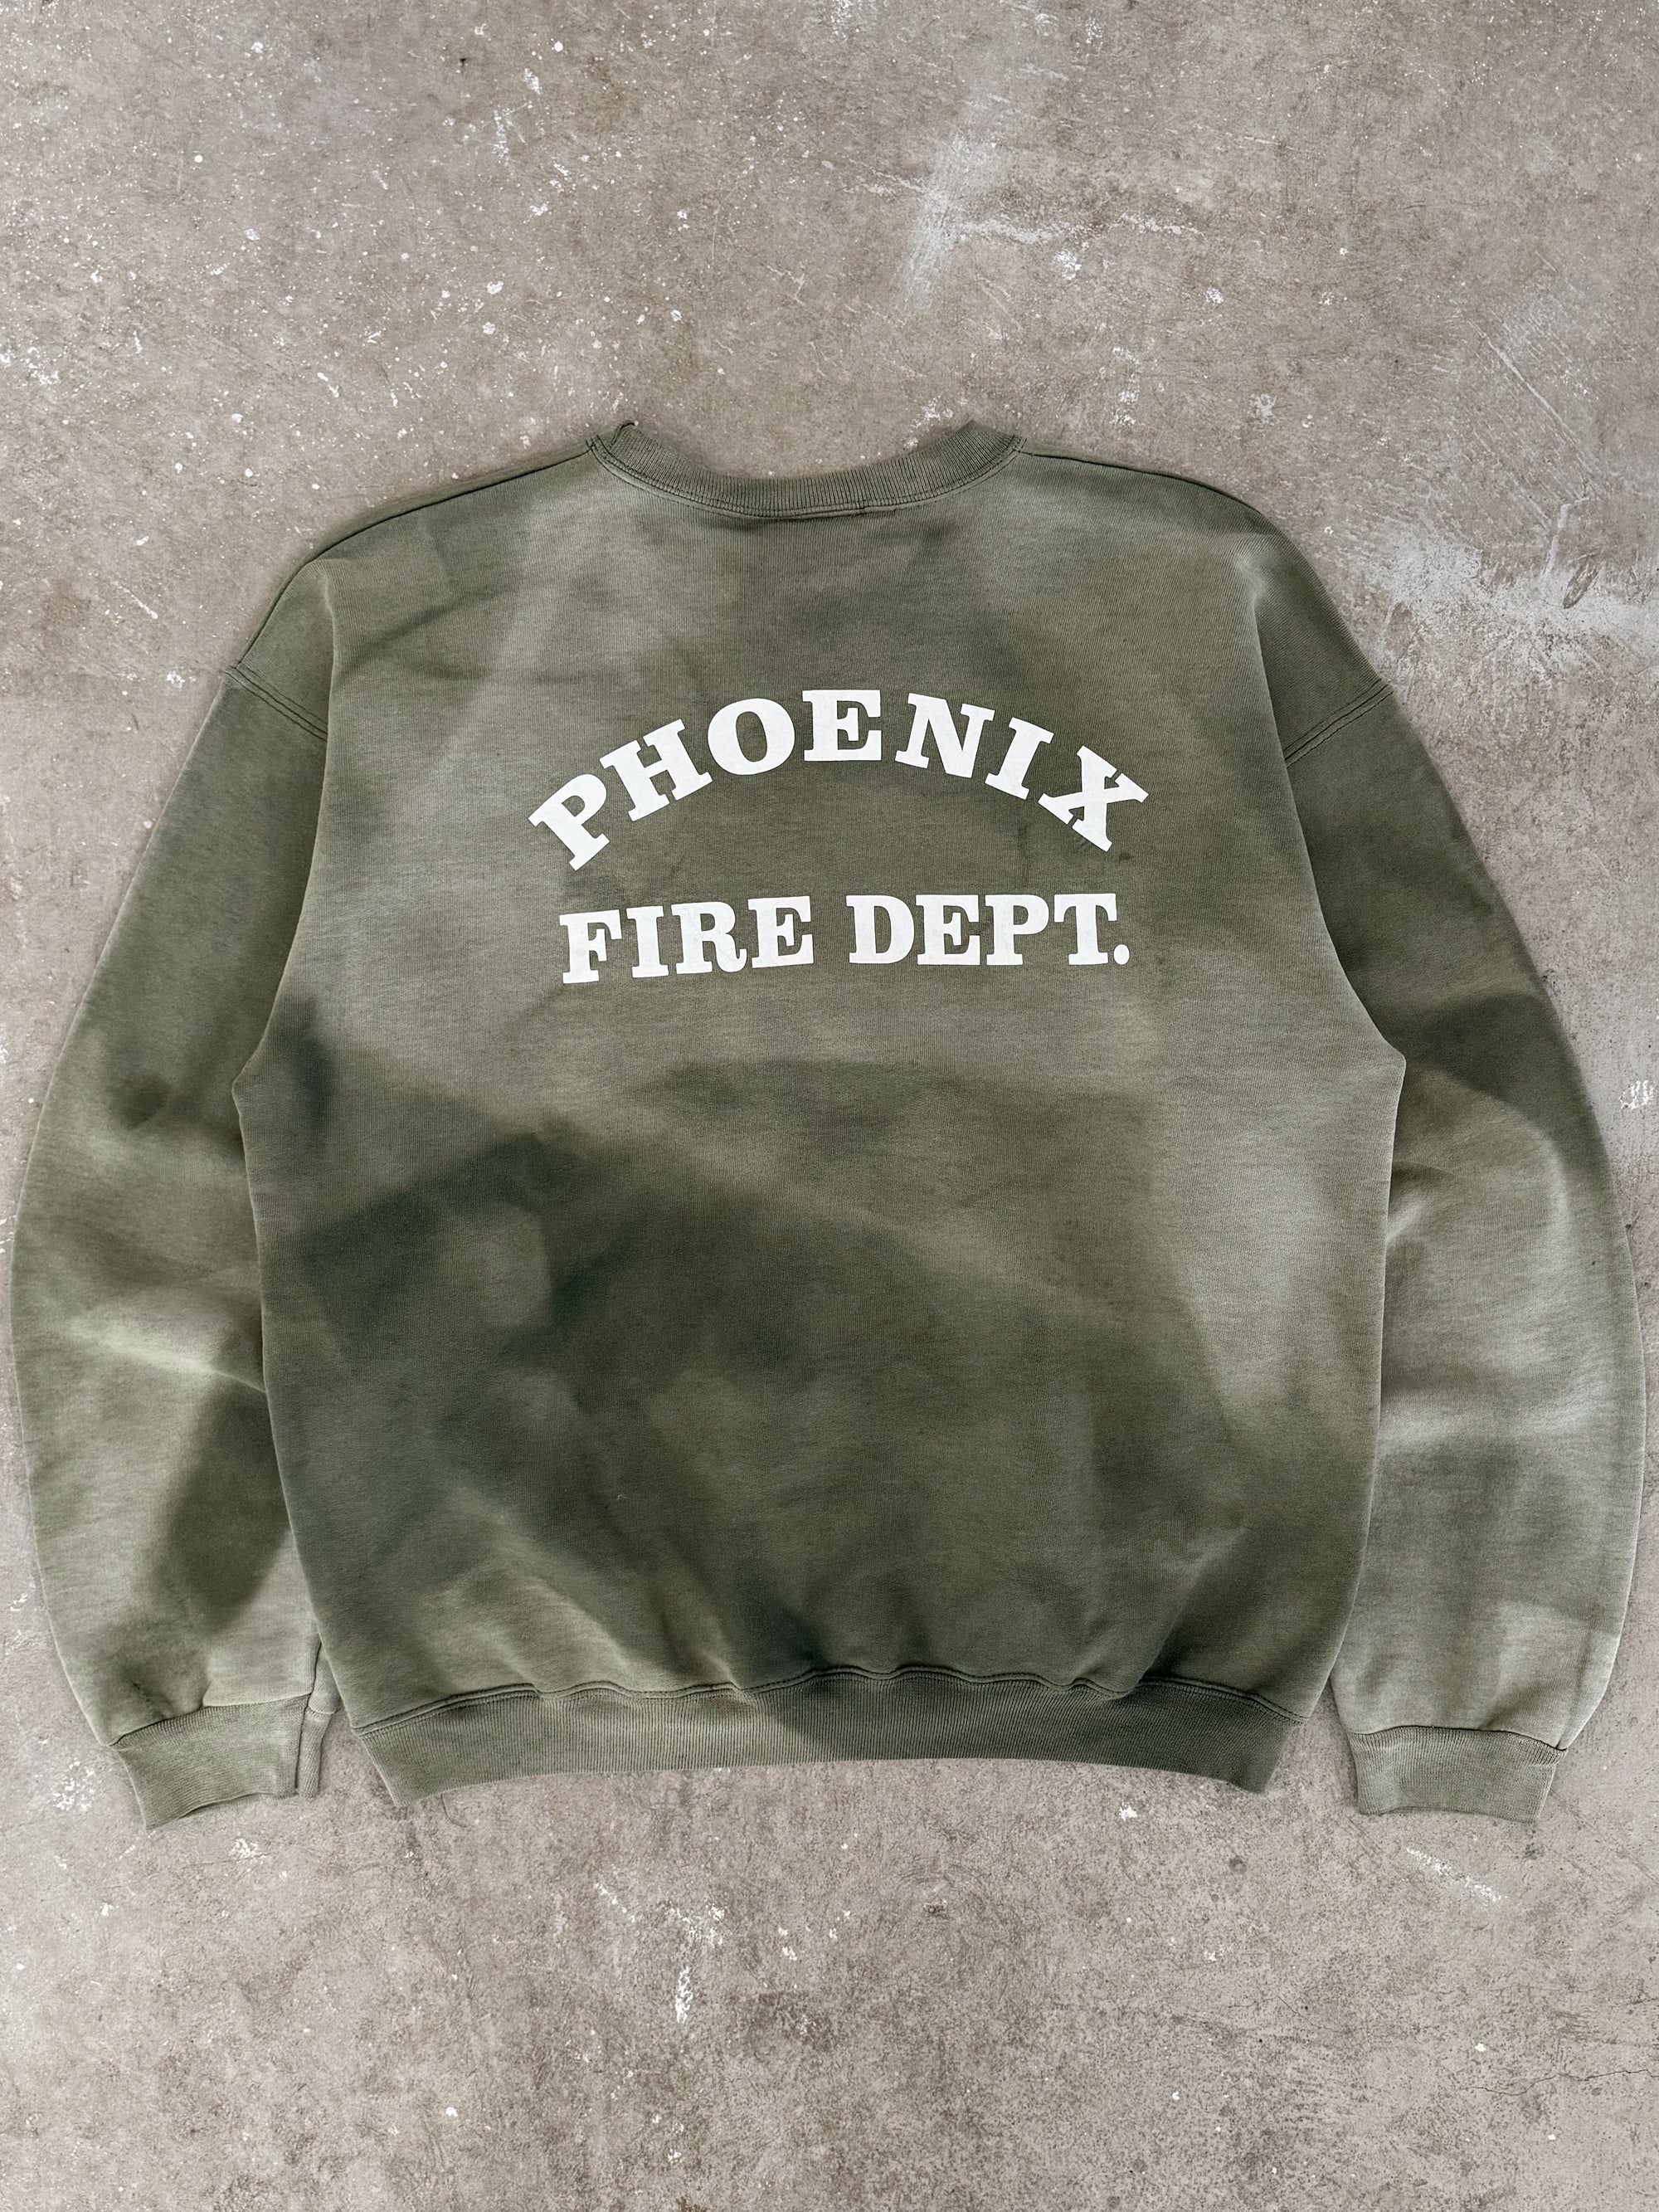 2000s "Phoenix Fire Dept" Sun Faded Sweatshirt (M)